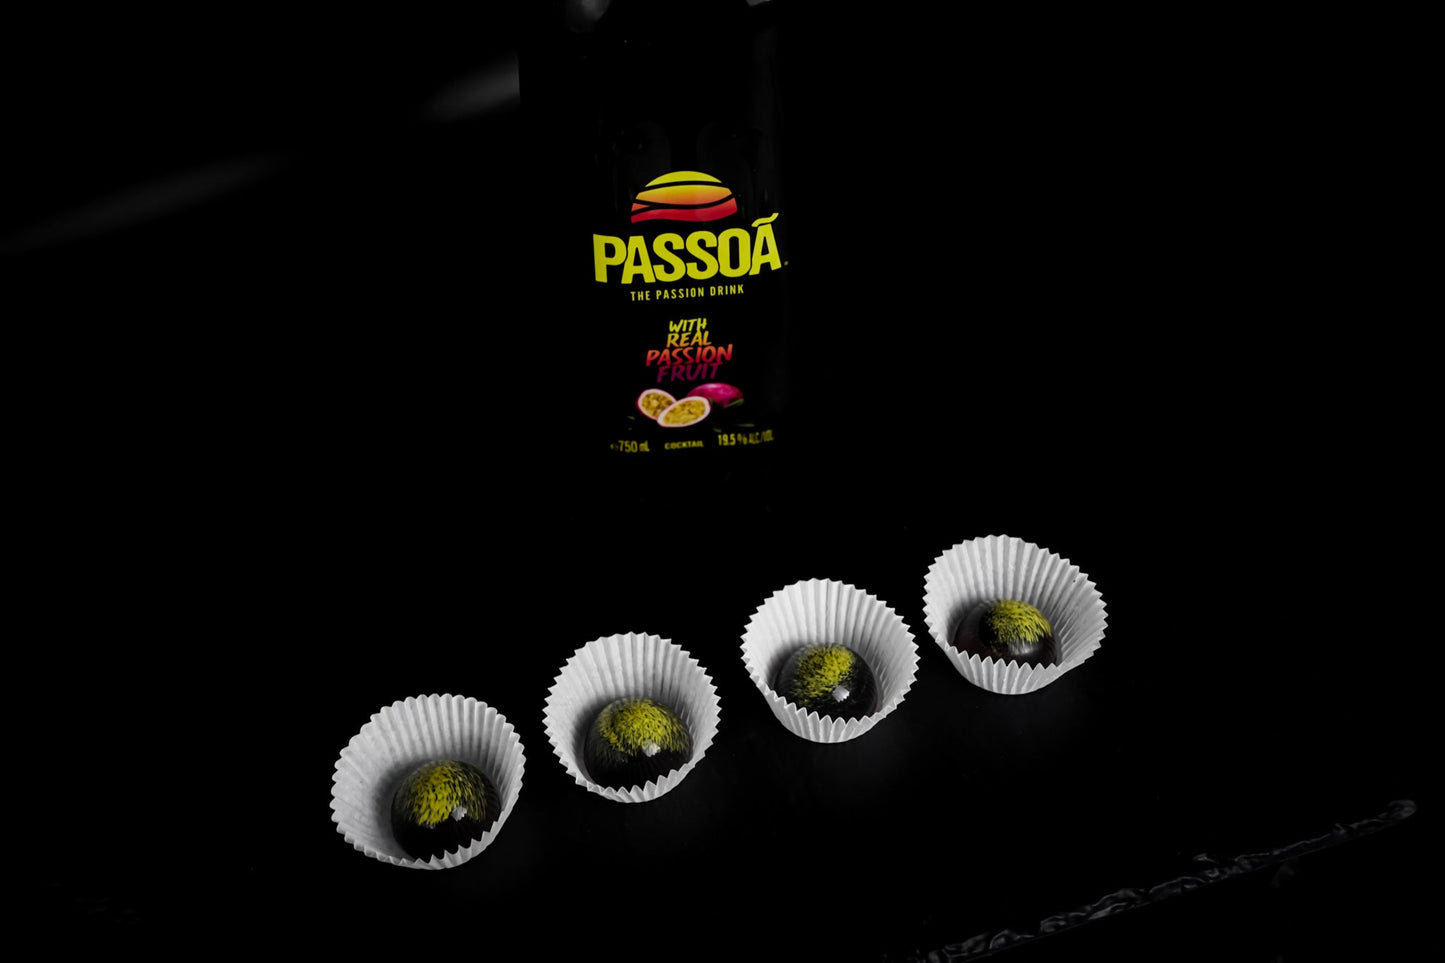 Passoa Passion Fruit Liqueur 750ml